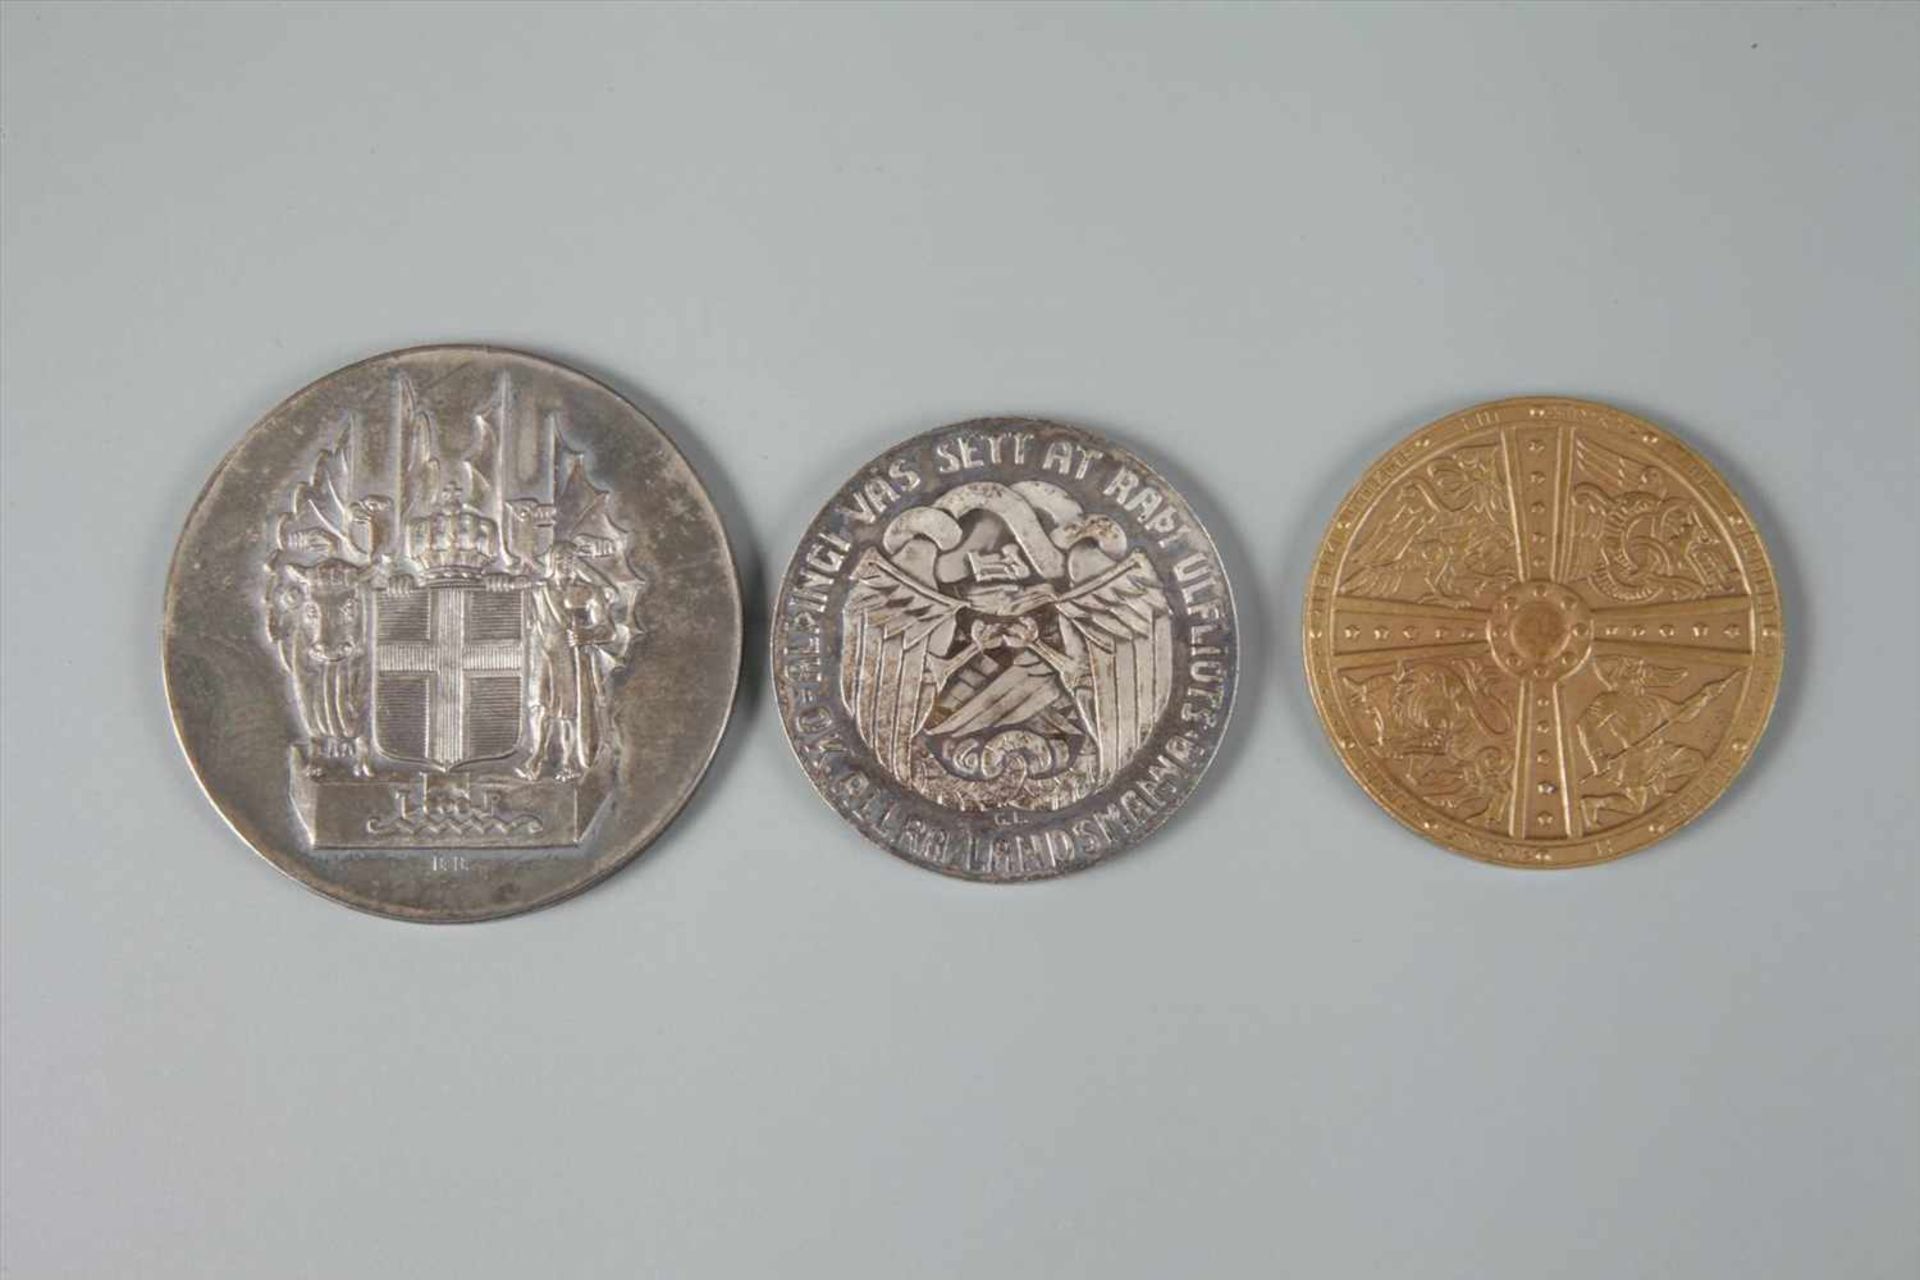 Drei Münzen Island im Etui Tausendjahrfeier Alting 1930, 2, 5 und 10 Kronen, vz, Etui hat sich - Bild 2 aus 3